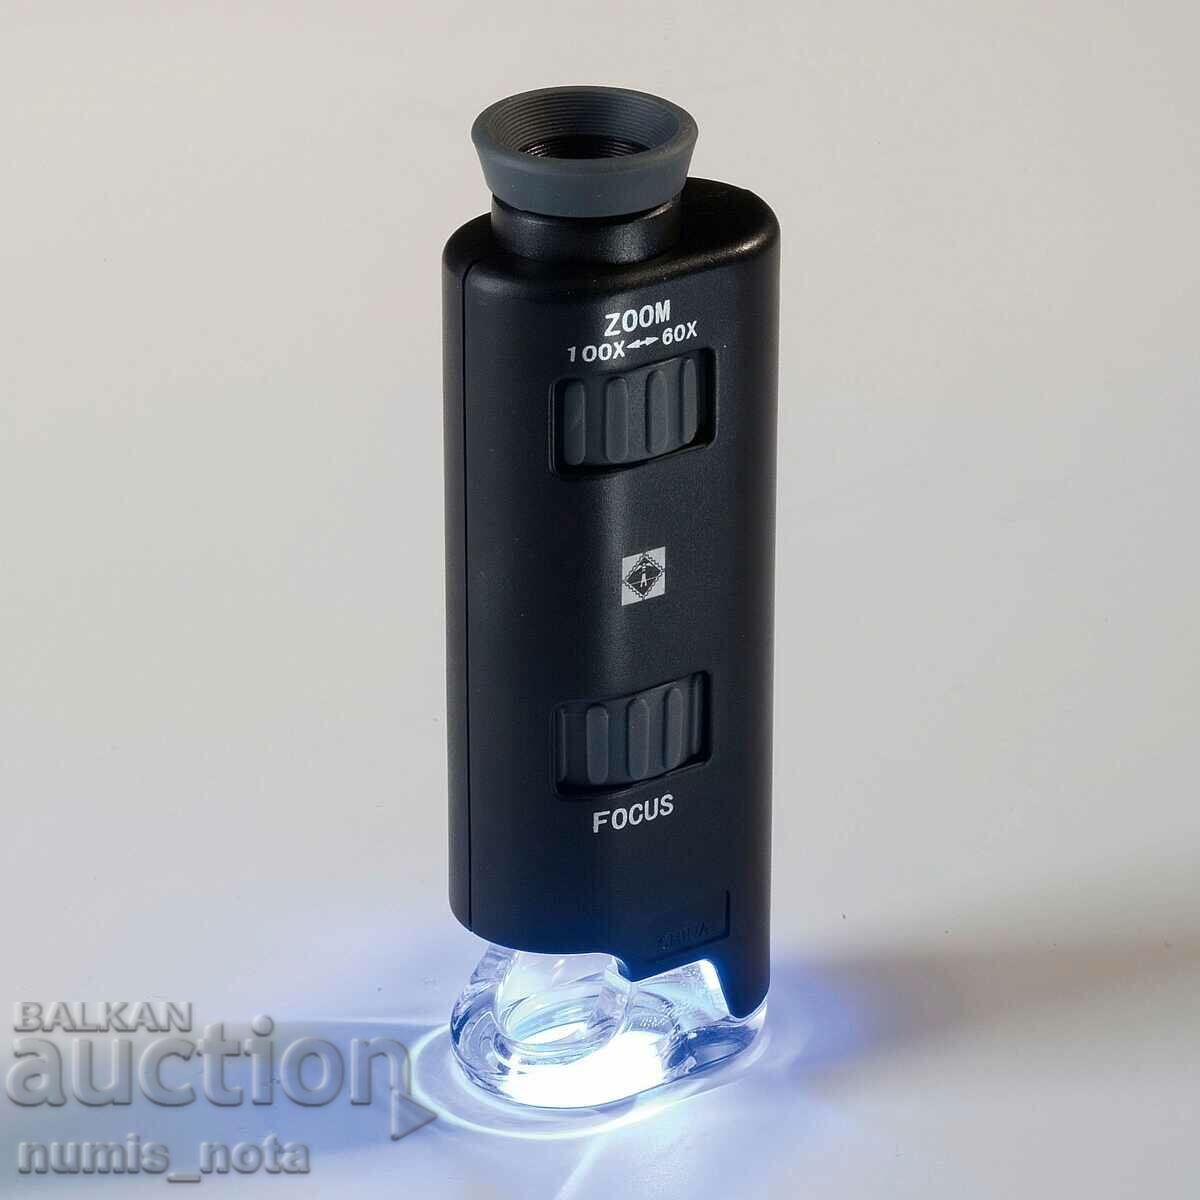 mini microscop de buzunar LEUCHTTURM -60X 100X cu iluminare de fundal LED